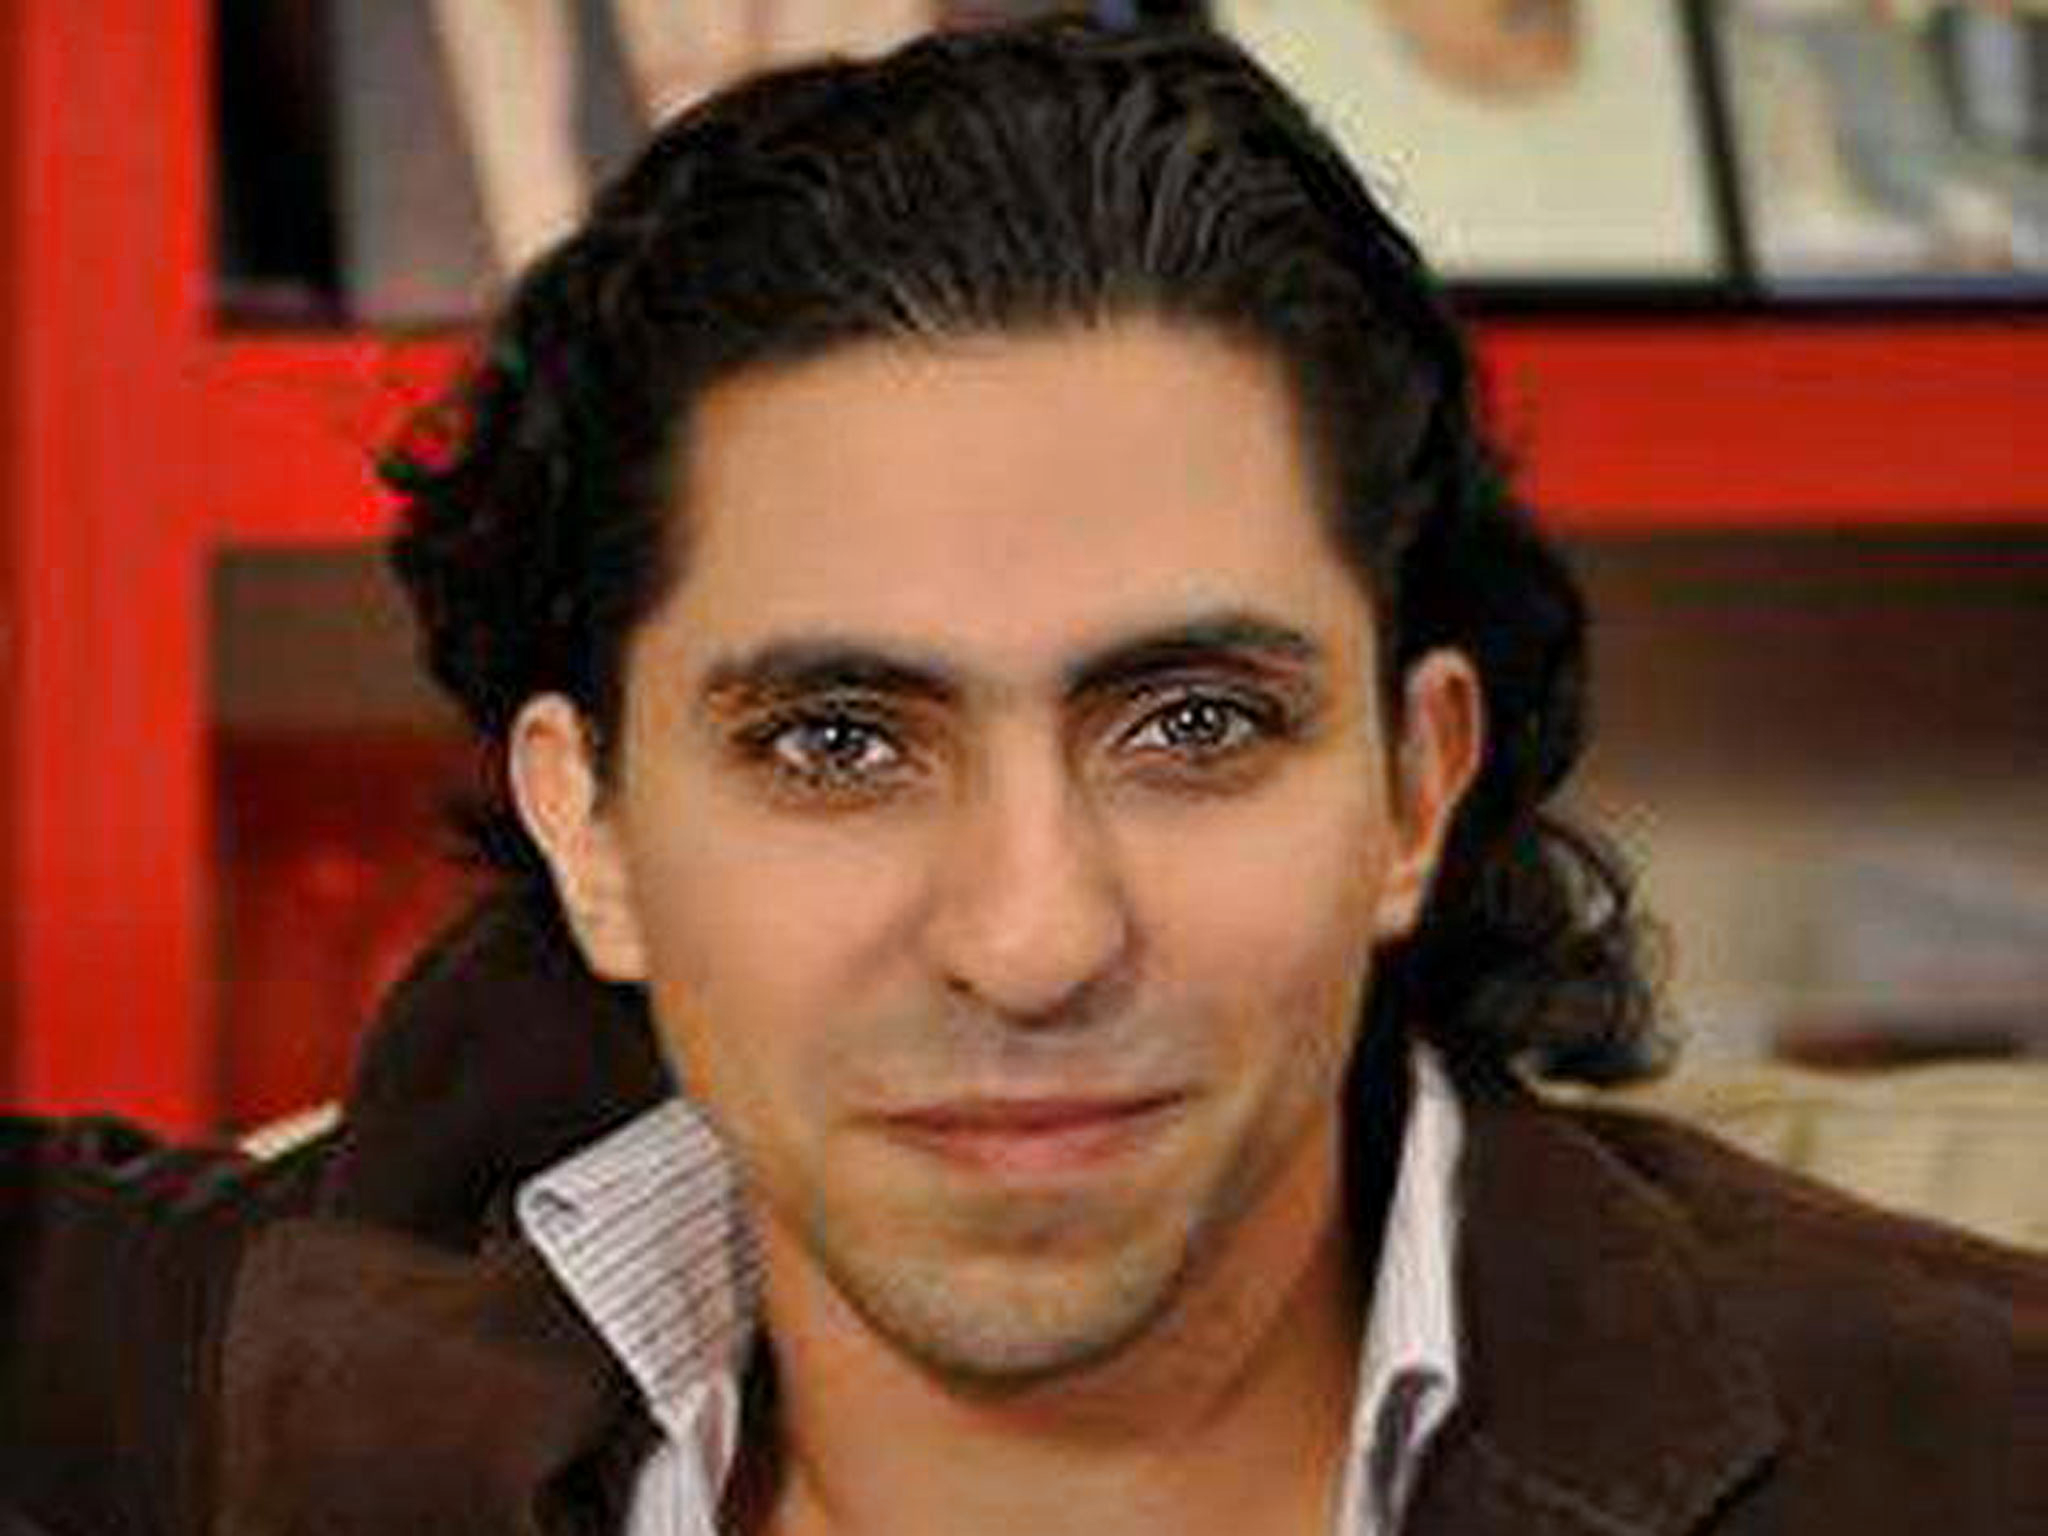 Raif Badawi est un écrivain et blogueur saoudien créateur en 2008 du site Free Saudi Liberals sur lequel il militait pour une libéralisation morale de l'Arabie saoudite.